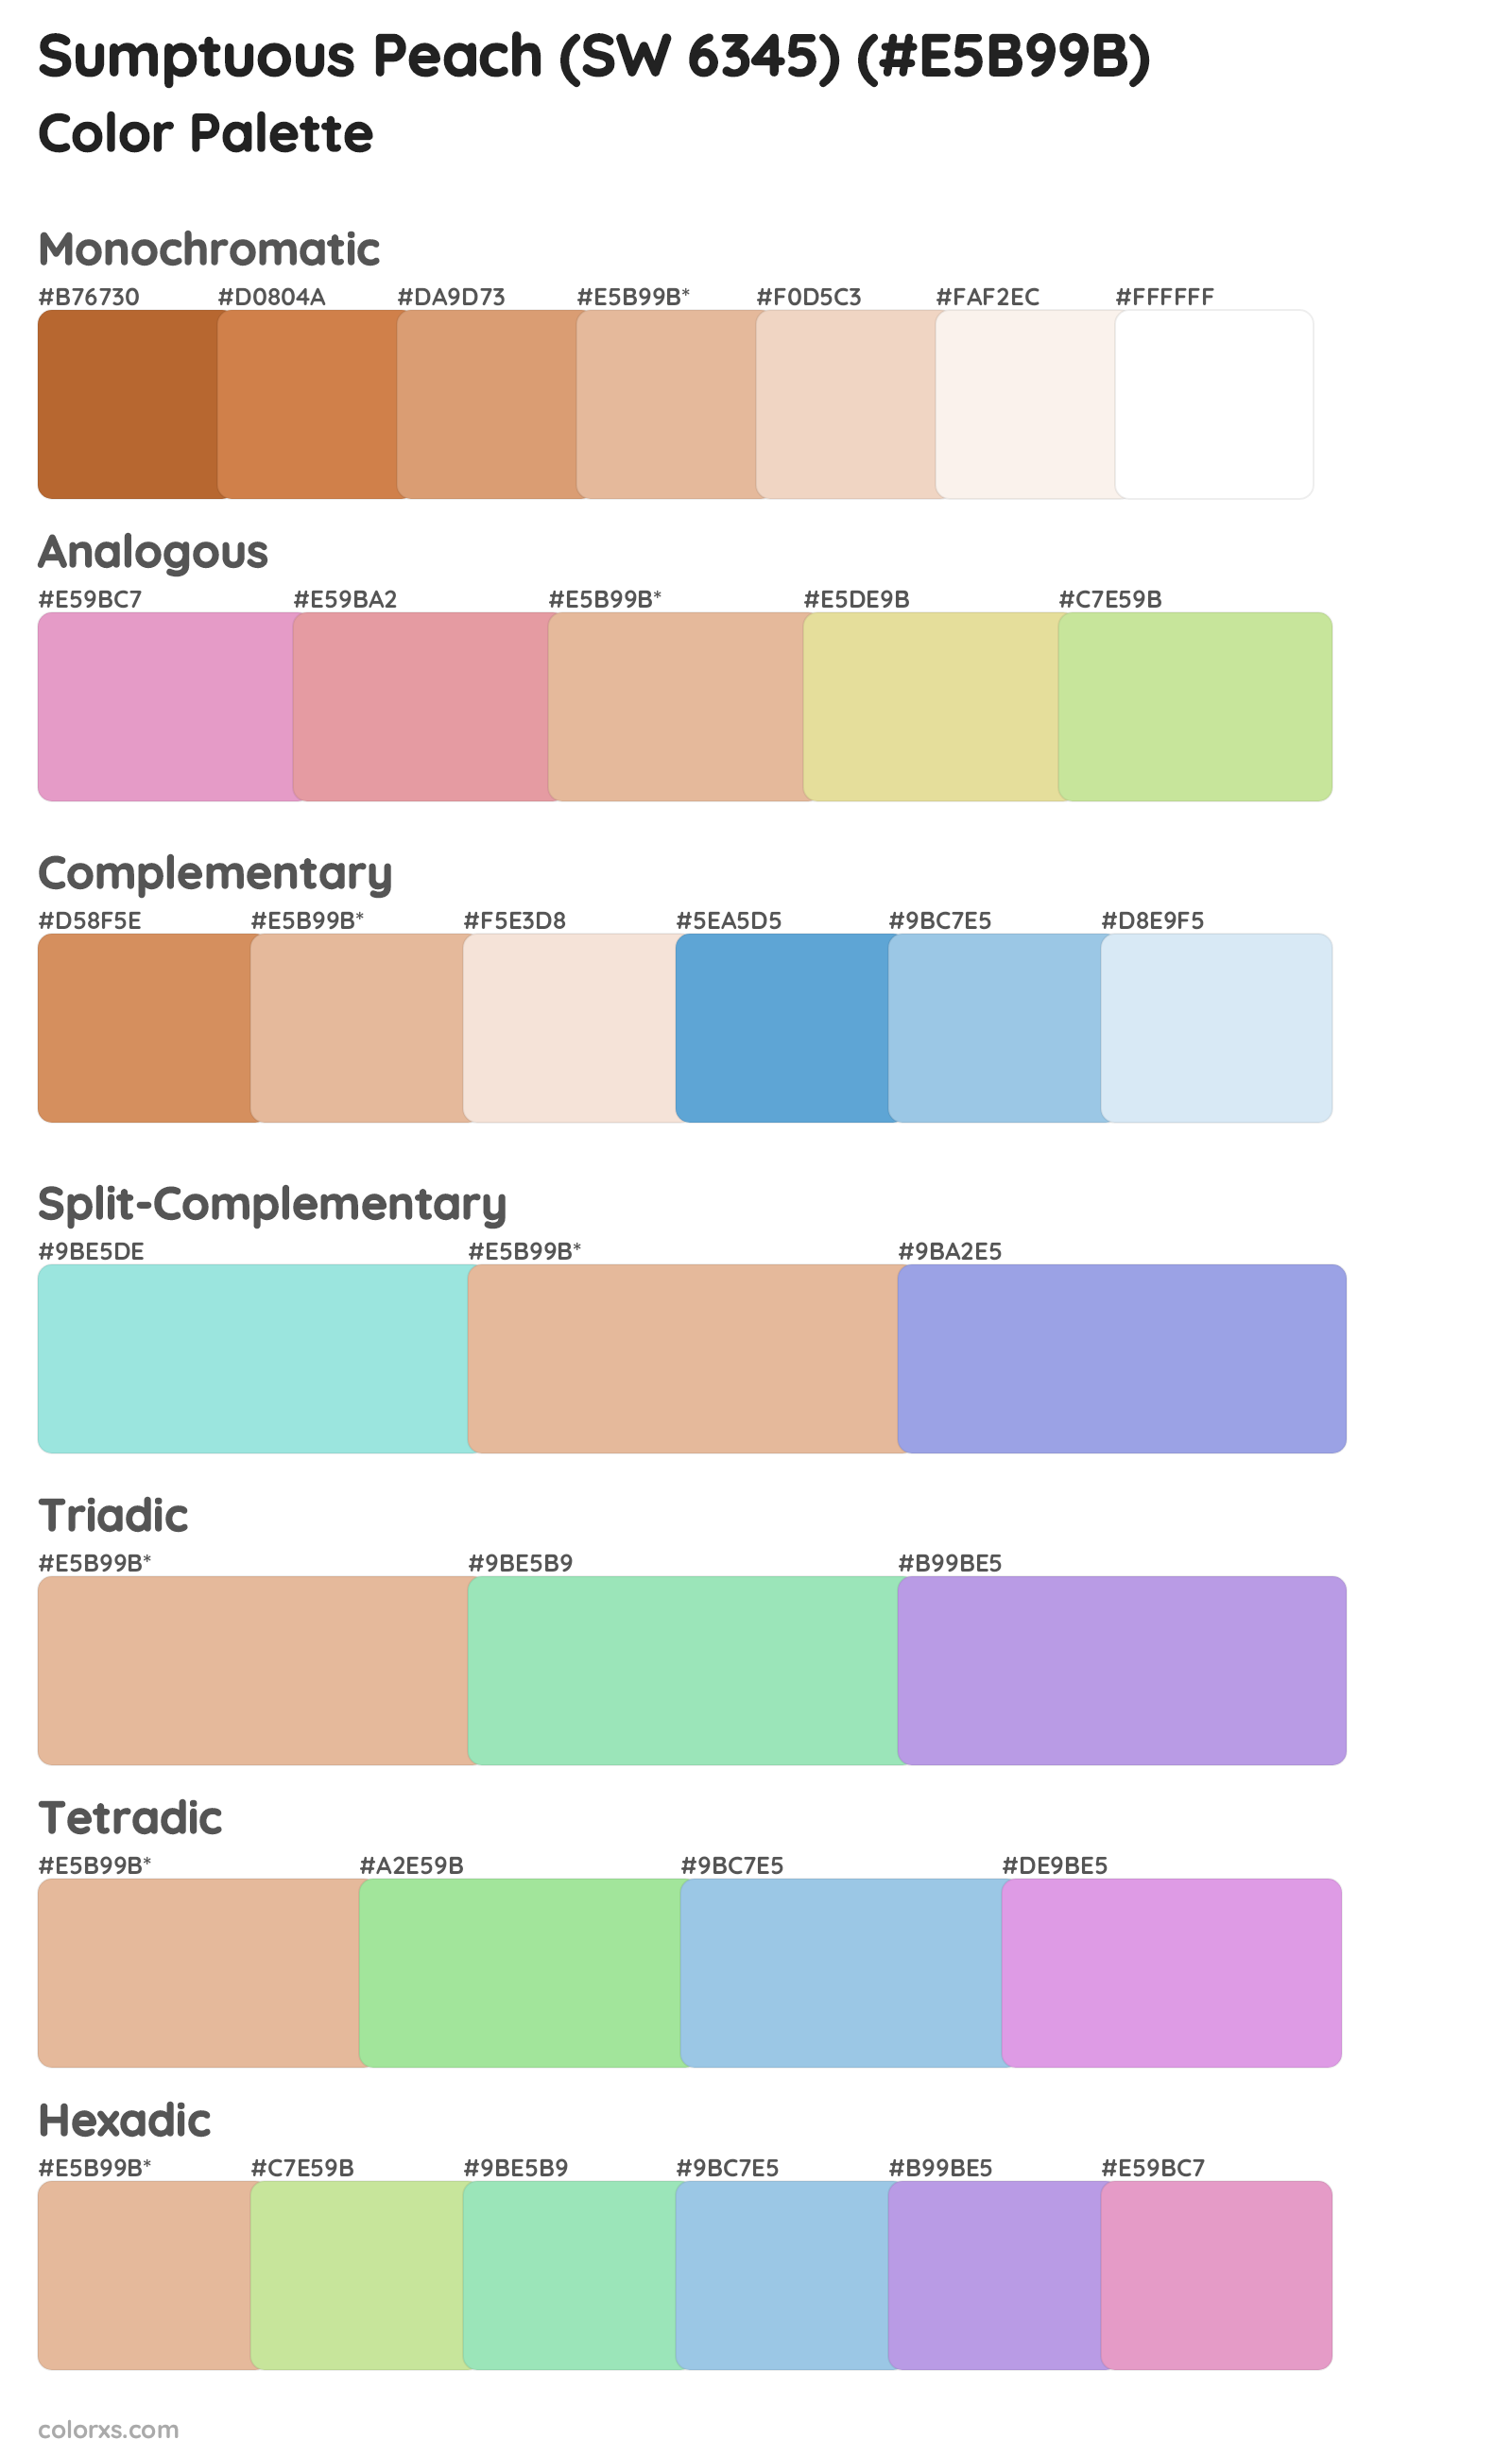 Sumptuous Peach (SW 6345) Color Scheme Palettes